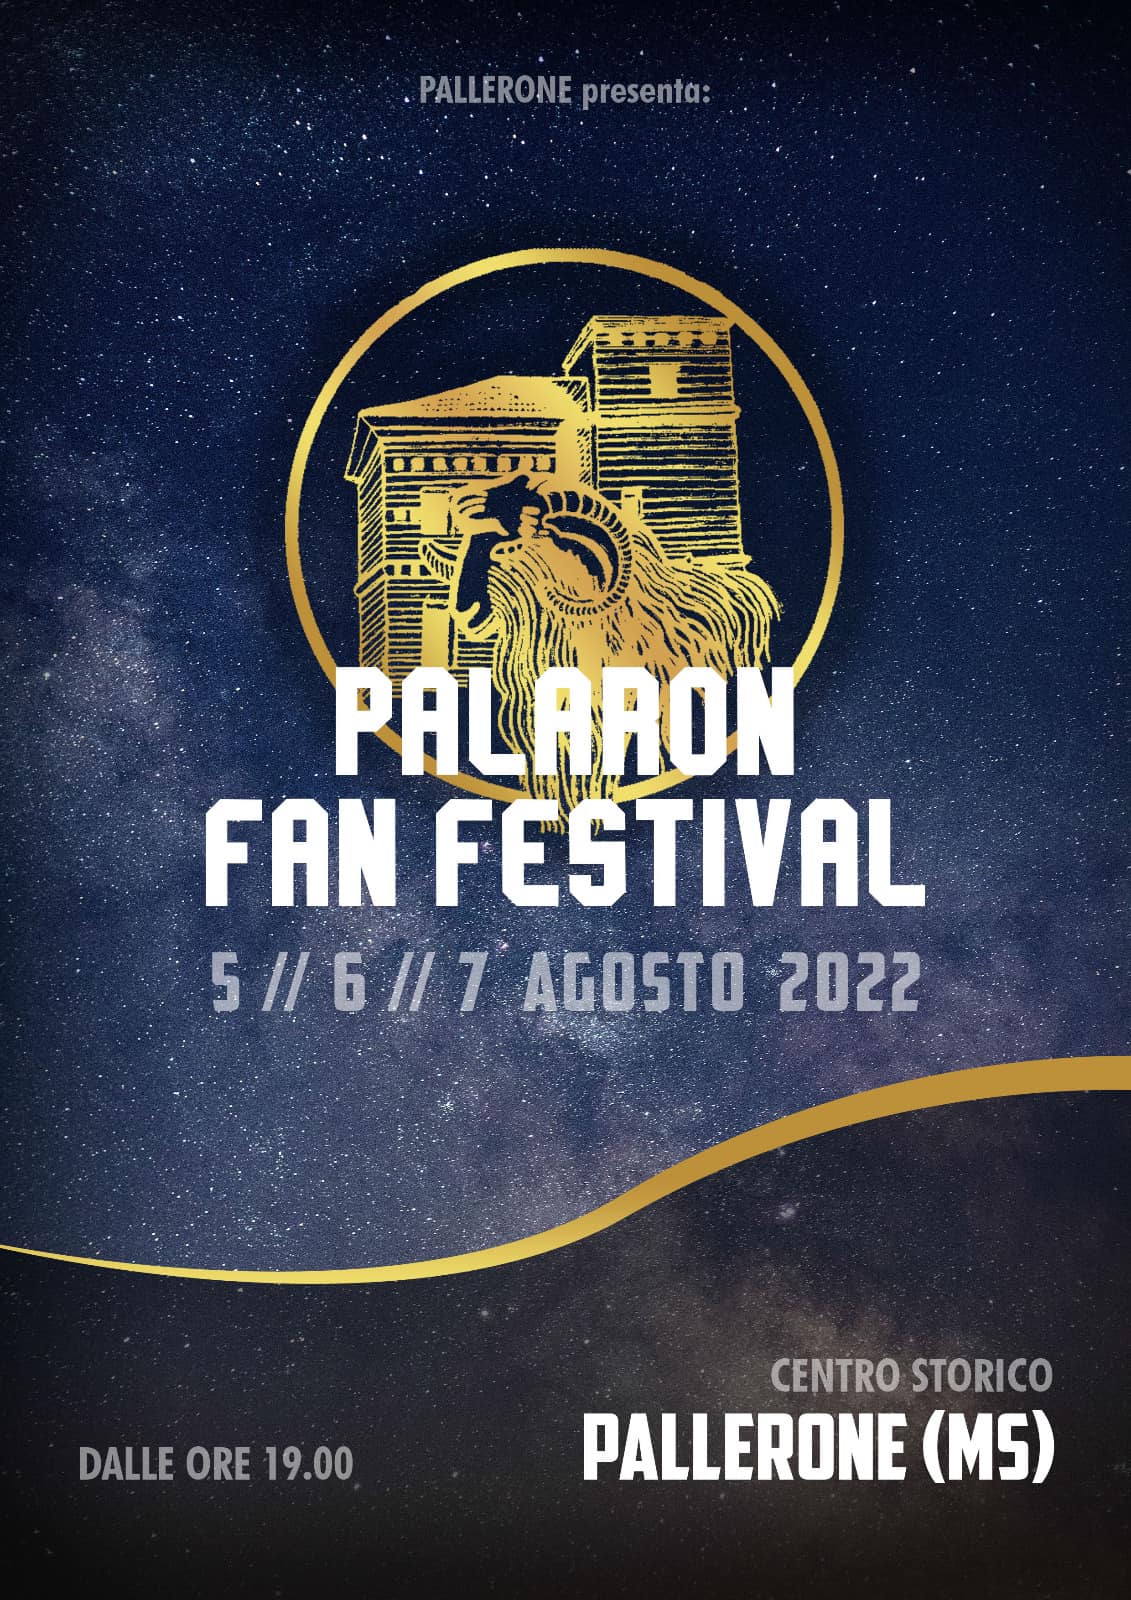 Palaron Fan Festival